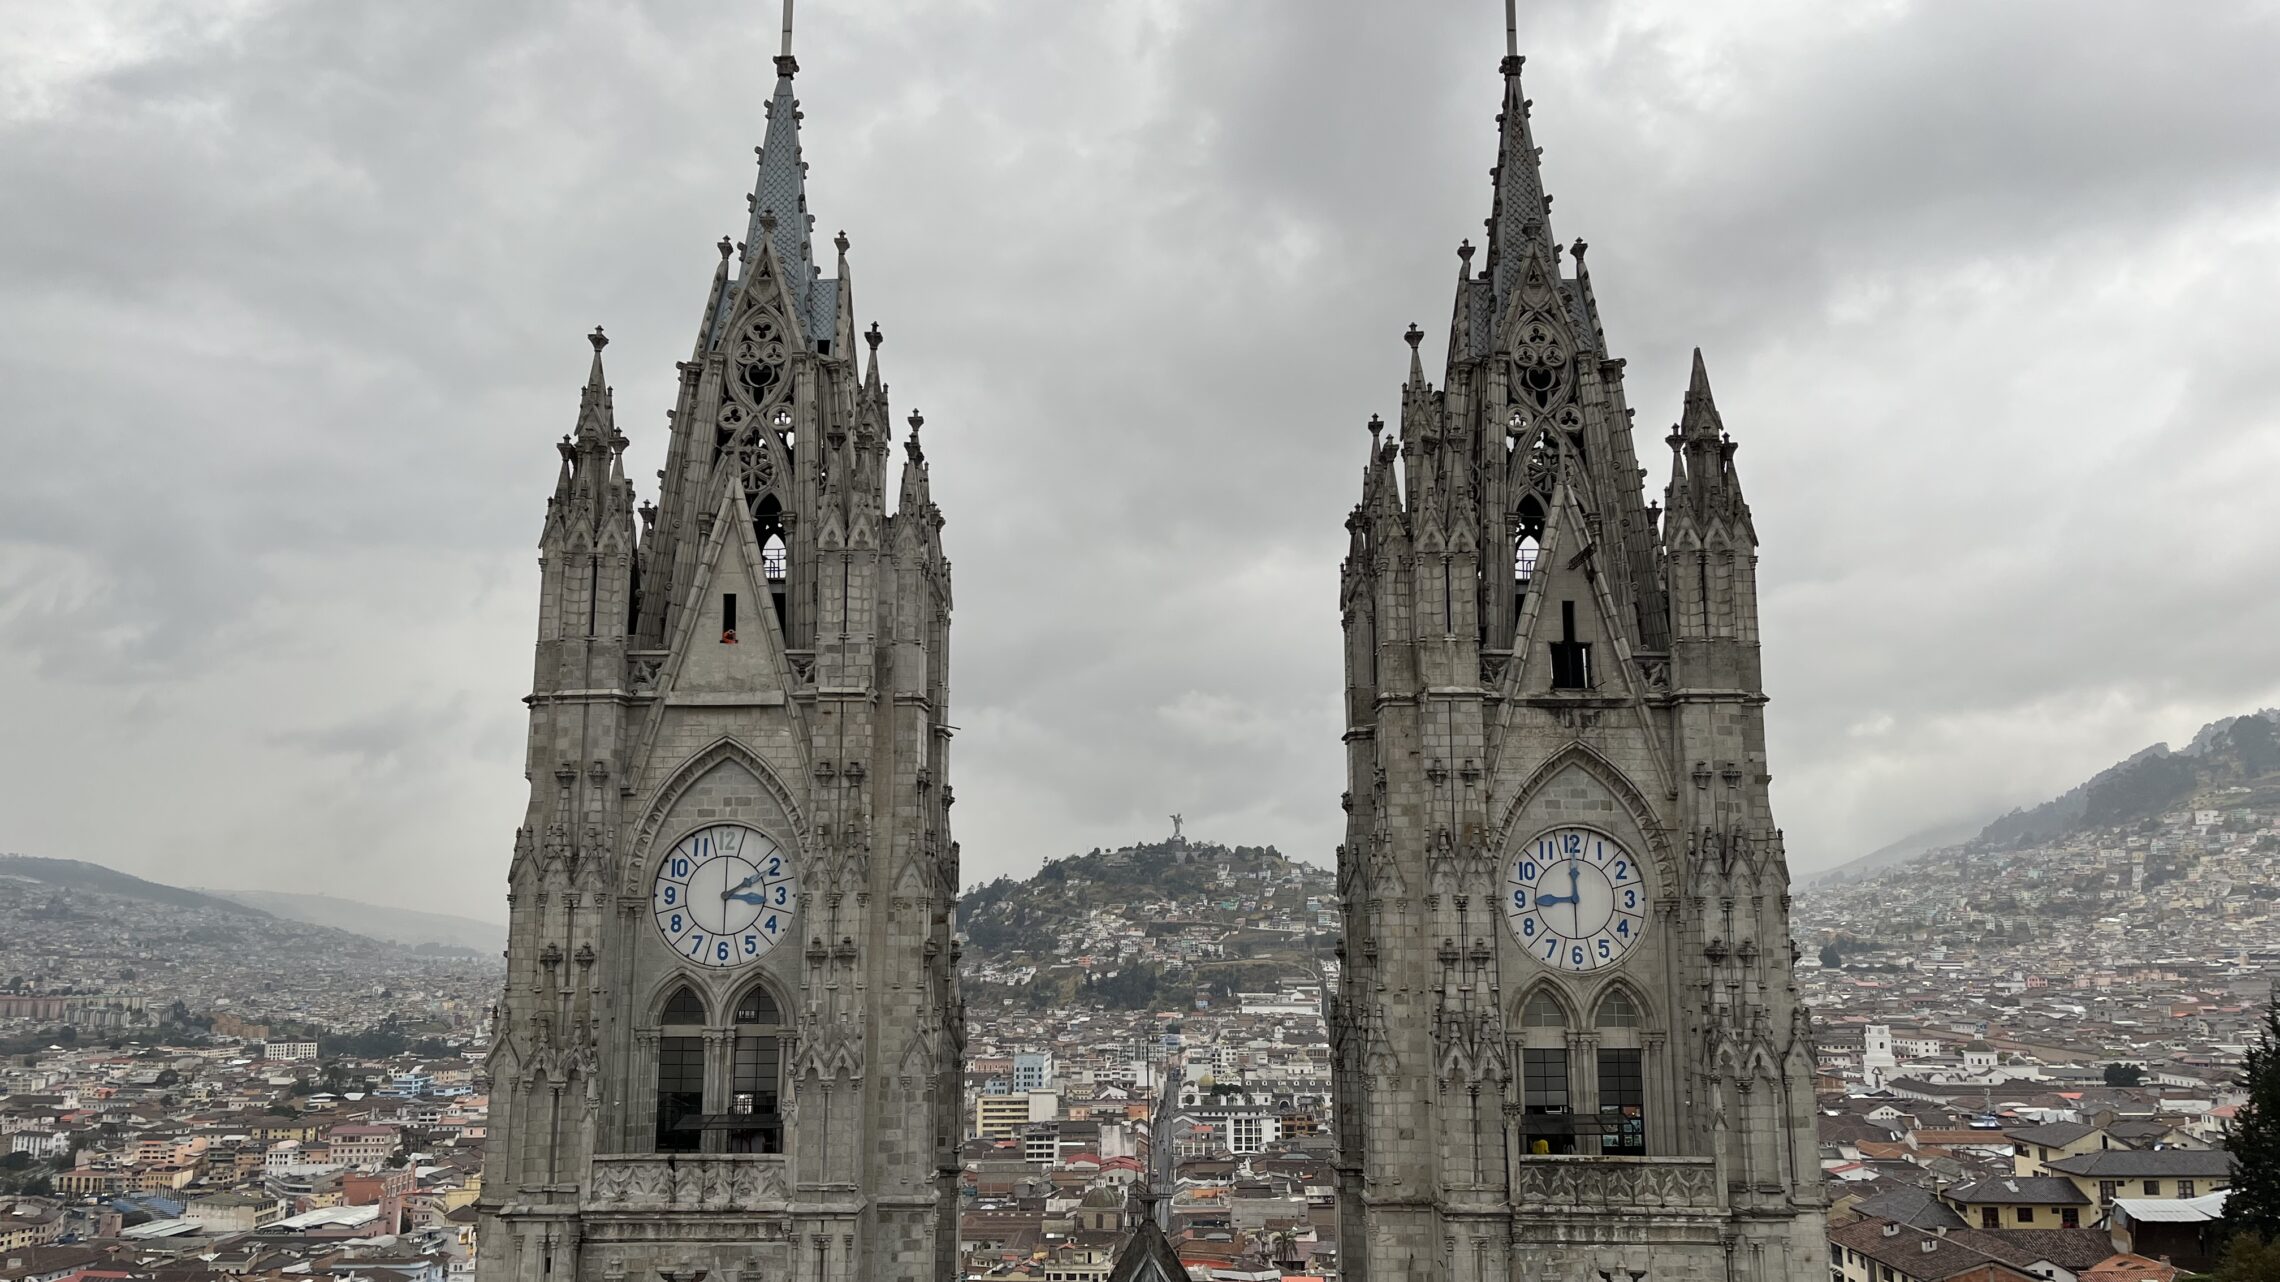 View from the Basílica del Voto Nacional in Quito's historic center.